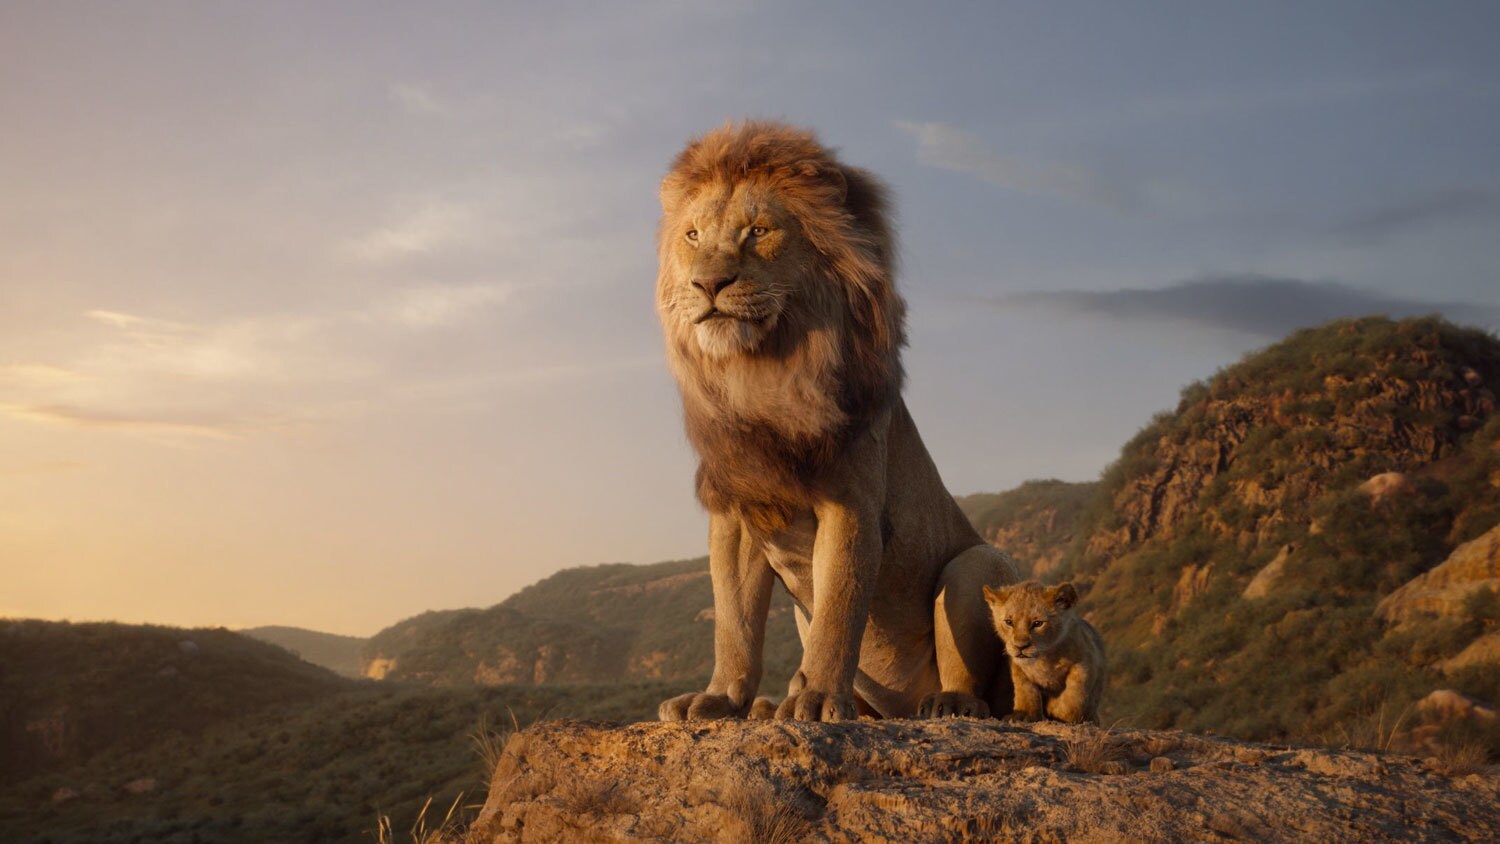 รีวิว the lion king 2019 การ์ตูนดิสนีย์สนุกๆ